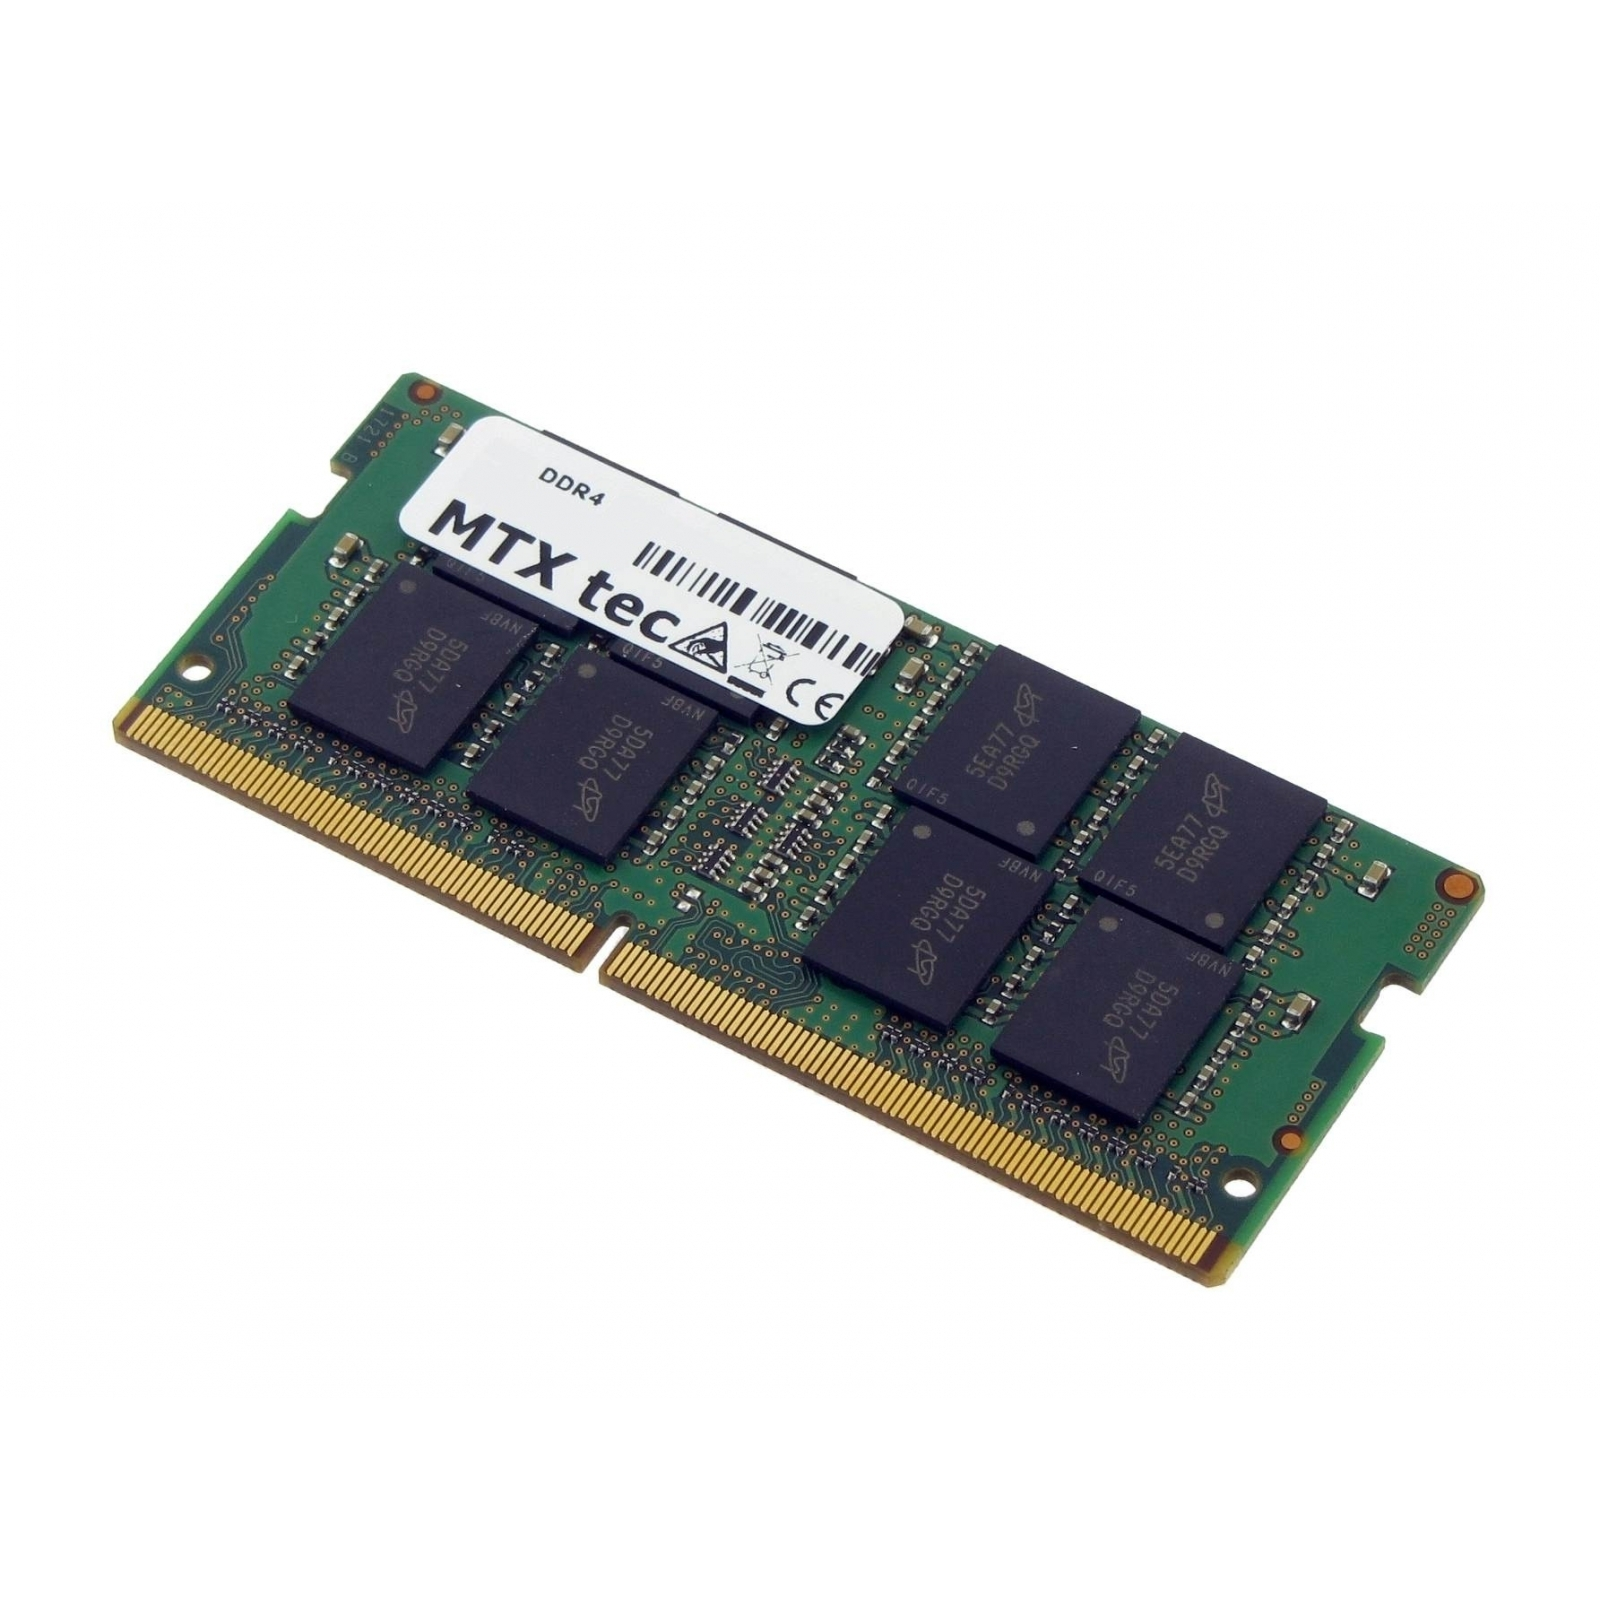 16 DDR4 Arbeitsspeicher HP für (3JZ32AW) MTXTEC GB 840 EliteBook G5 16 RAM GB Notebook-Speicher